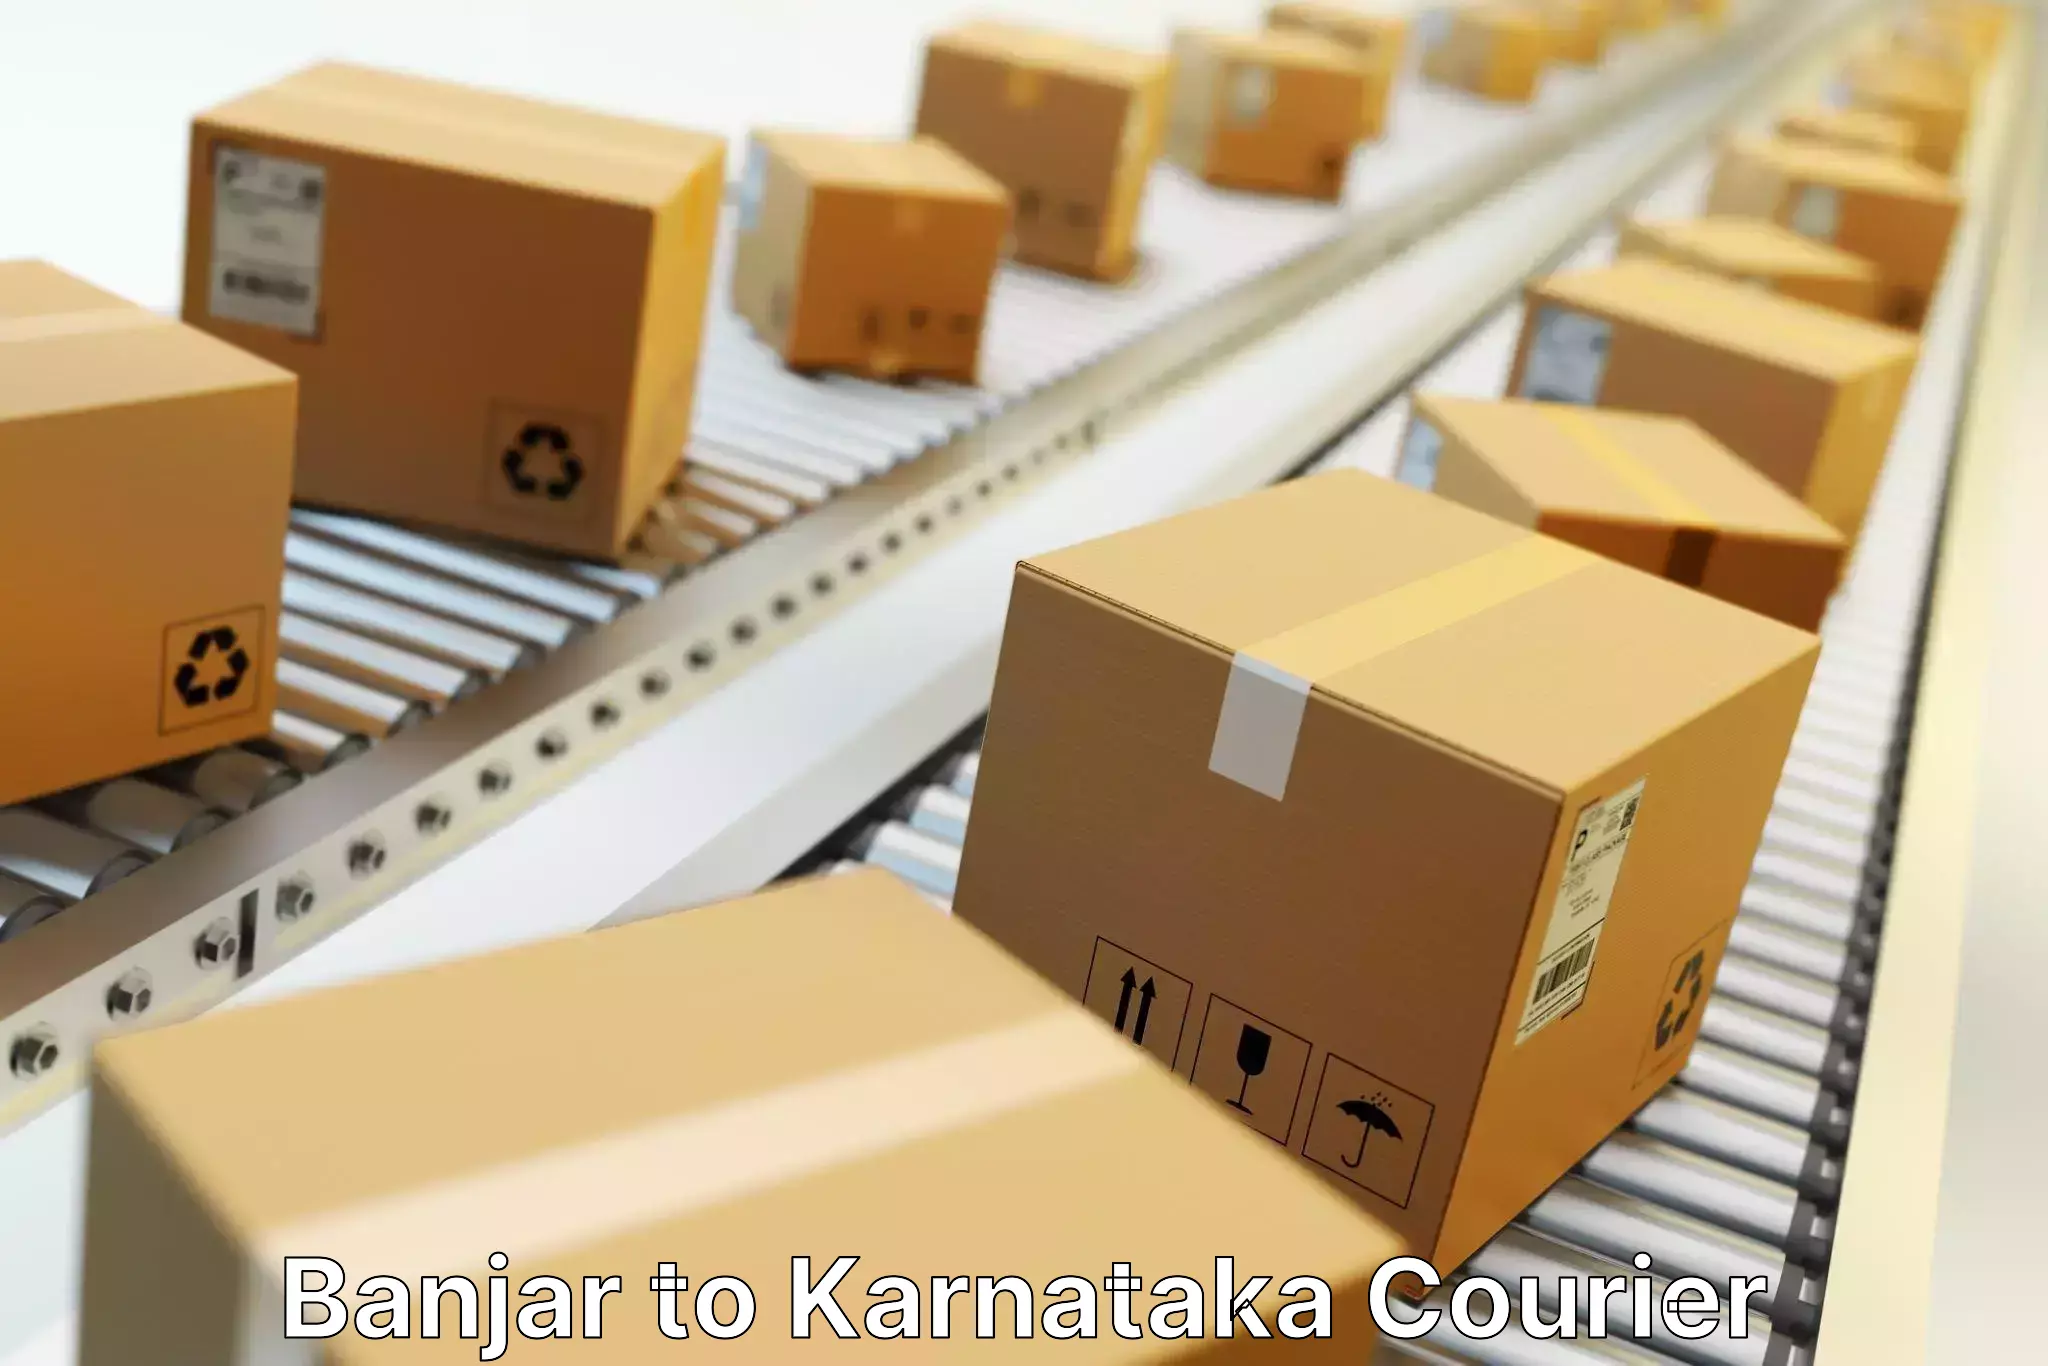 Integrated shipping services Banjar to Karnataka